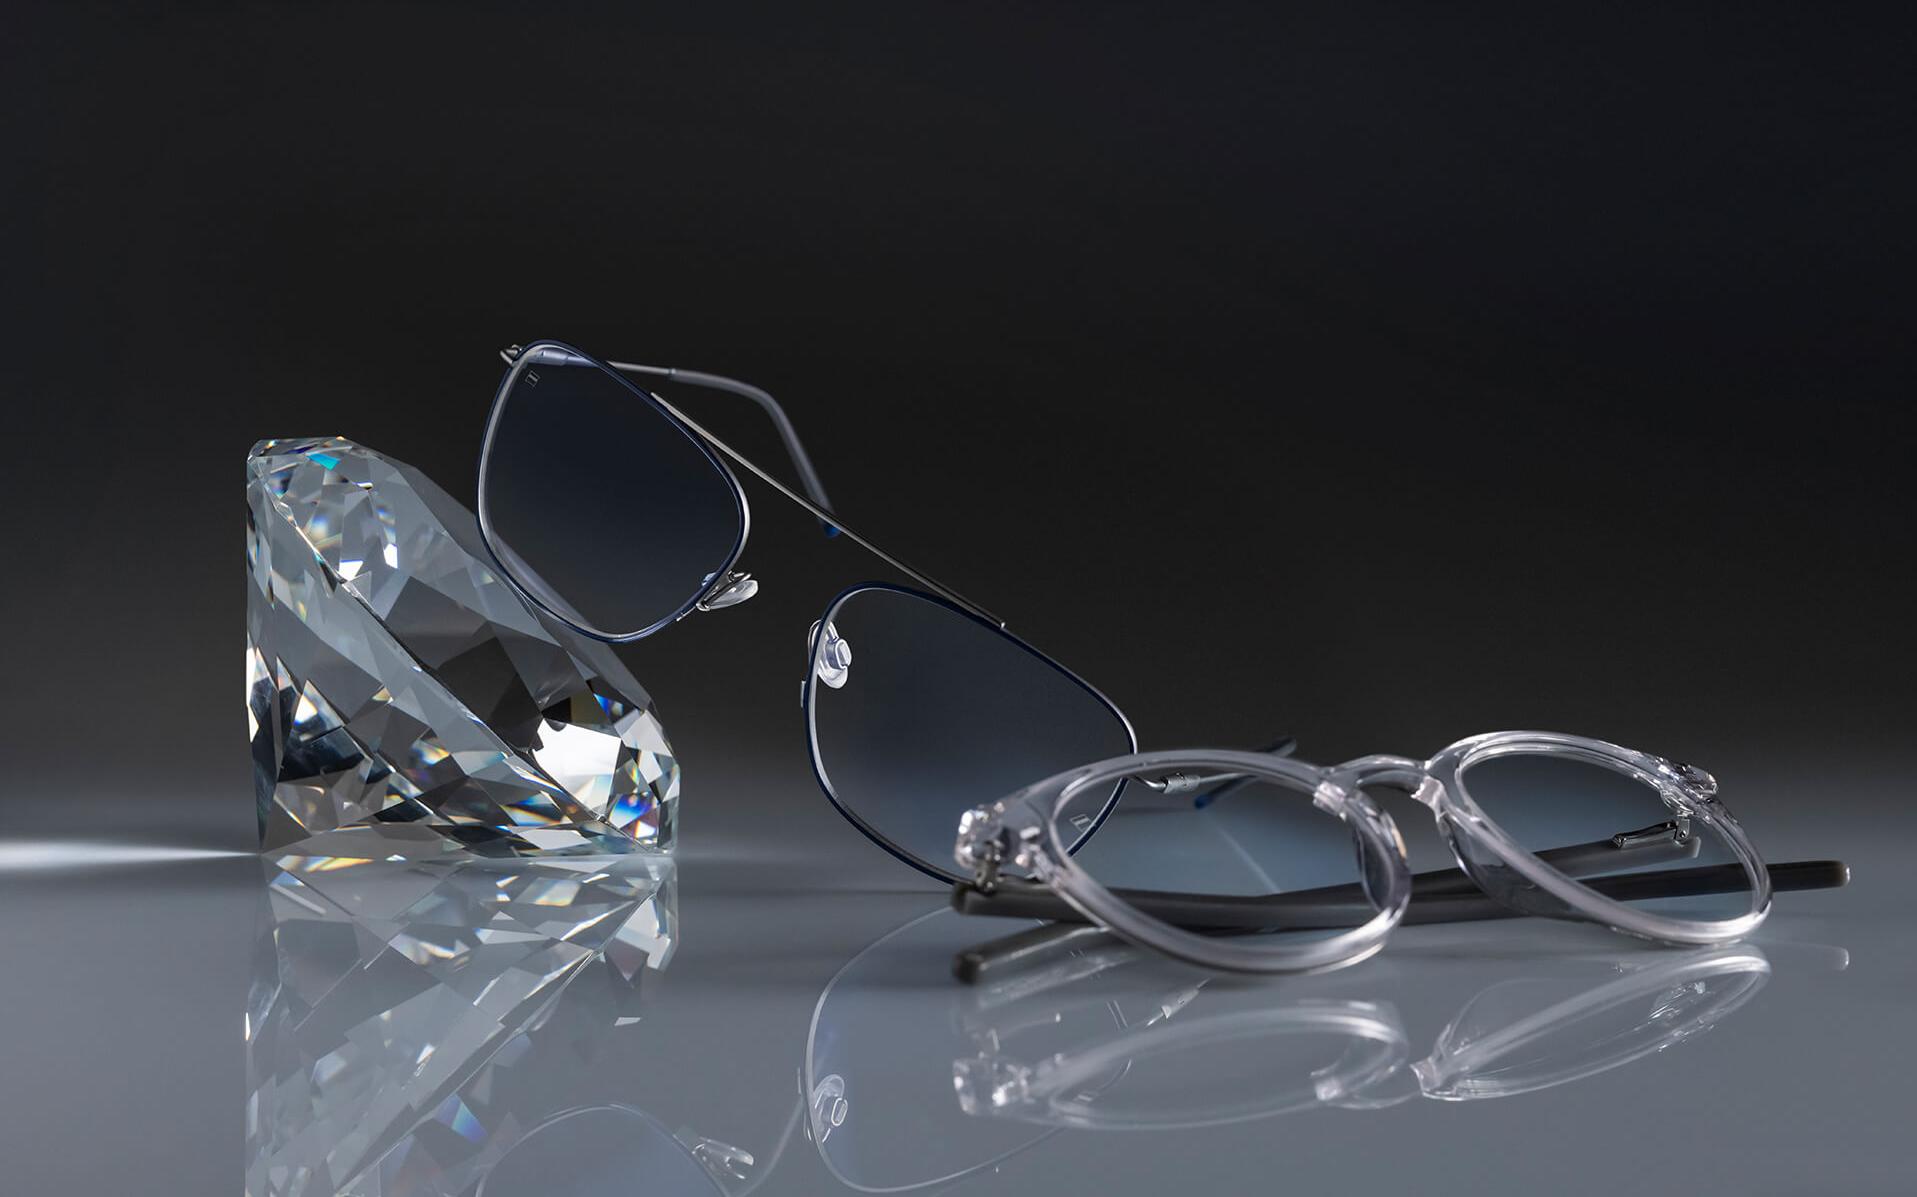 두 벌의 안경에 장착된 자이스 렌즈에 자이스 역사상 가장 단단한 코팅인 듀라비전® 플래티넘이 적용되어 있습니다. 안경 한 벌은 수정에 기대어져 있고 다른 한 벌은 바닥에 놓여 있습니다. 두 벌 모두 투명한 렌즈에 은은한 블루 잔여반사가 나타납니다.